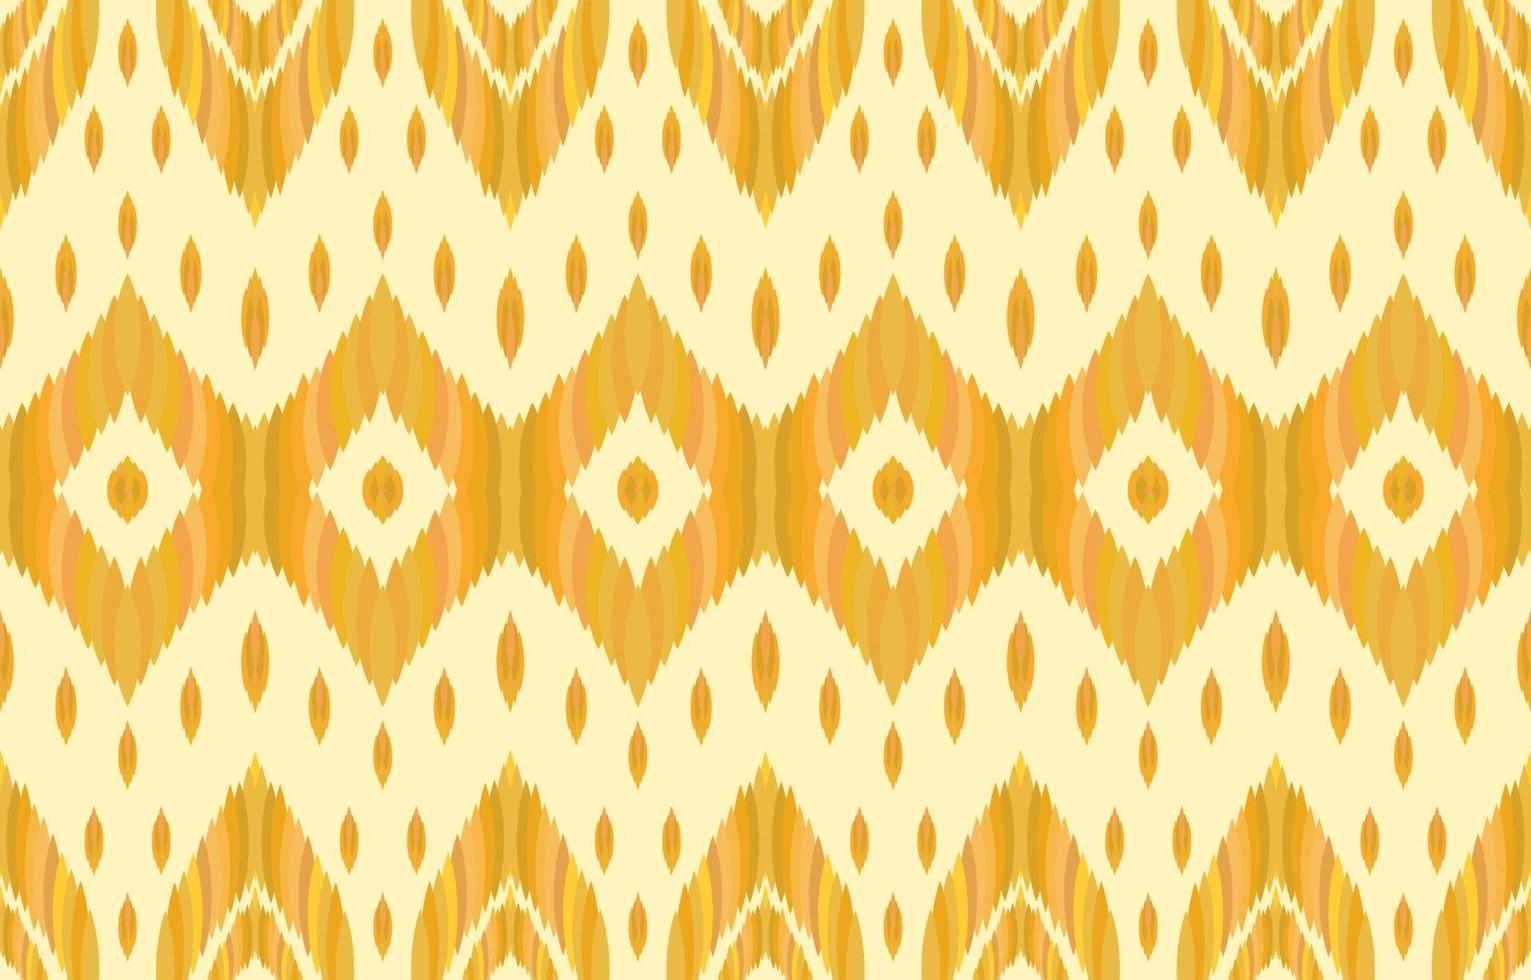 patrón geométrico abstracto étnico ikat sin fisuras. tejido tribal nativo azteca sobre fondo dorado amarillo. diseño vectorial para textura, textil, ropa, papel pintado, moqueta, bordado. impresión de ilustración vector